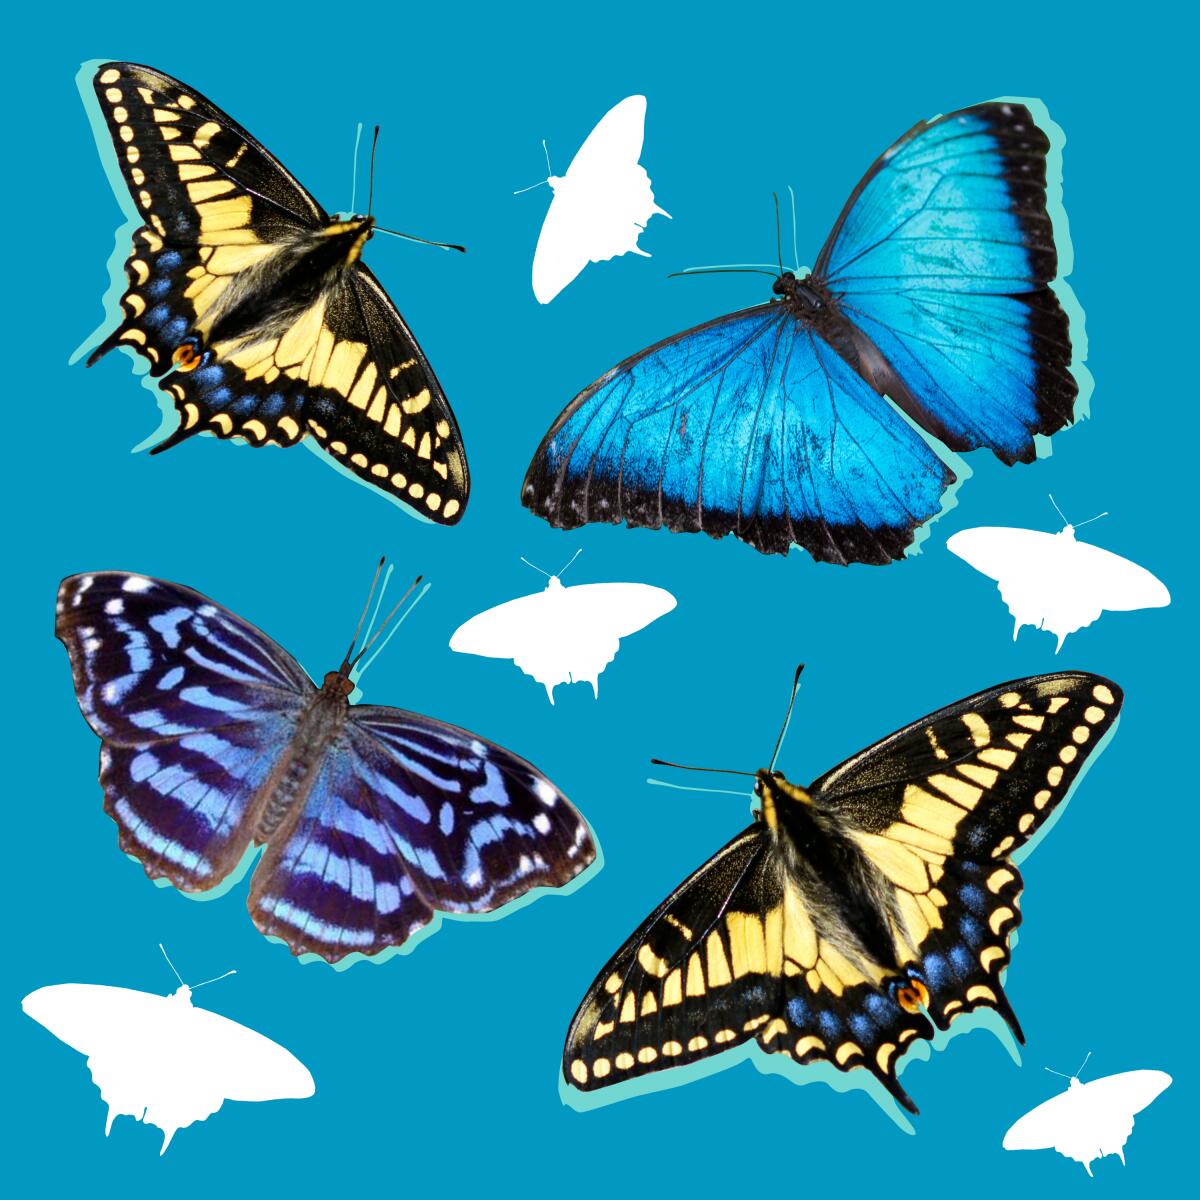 An illustration of various butterflies